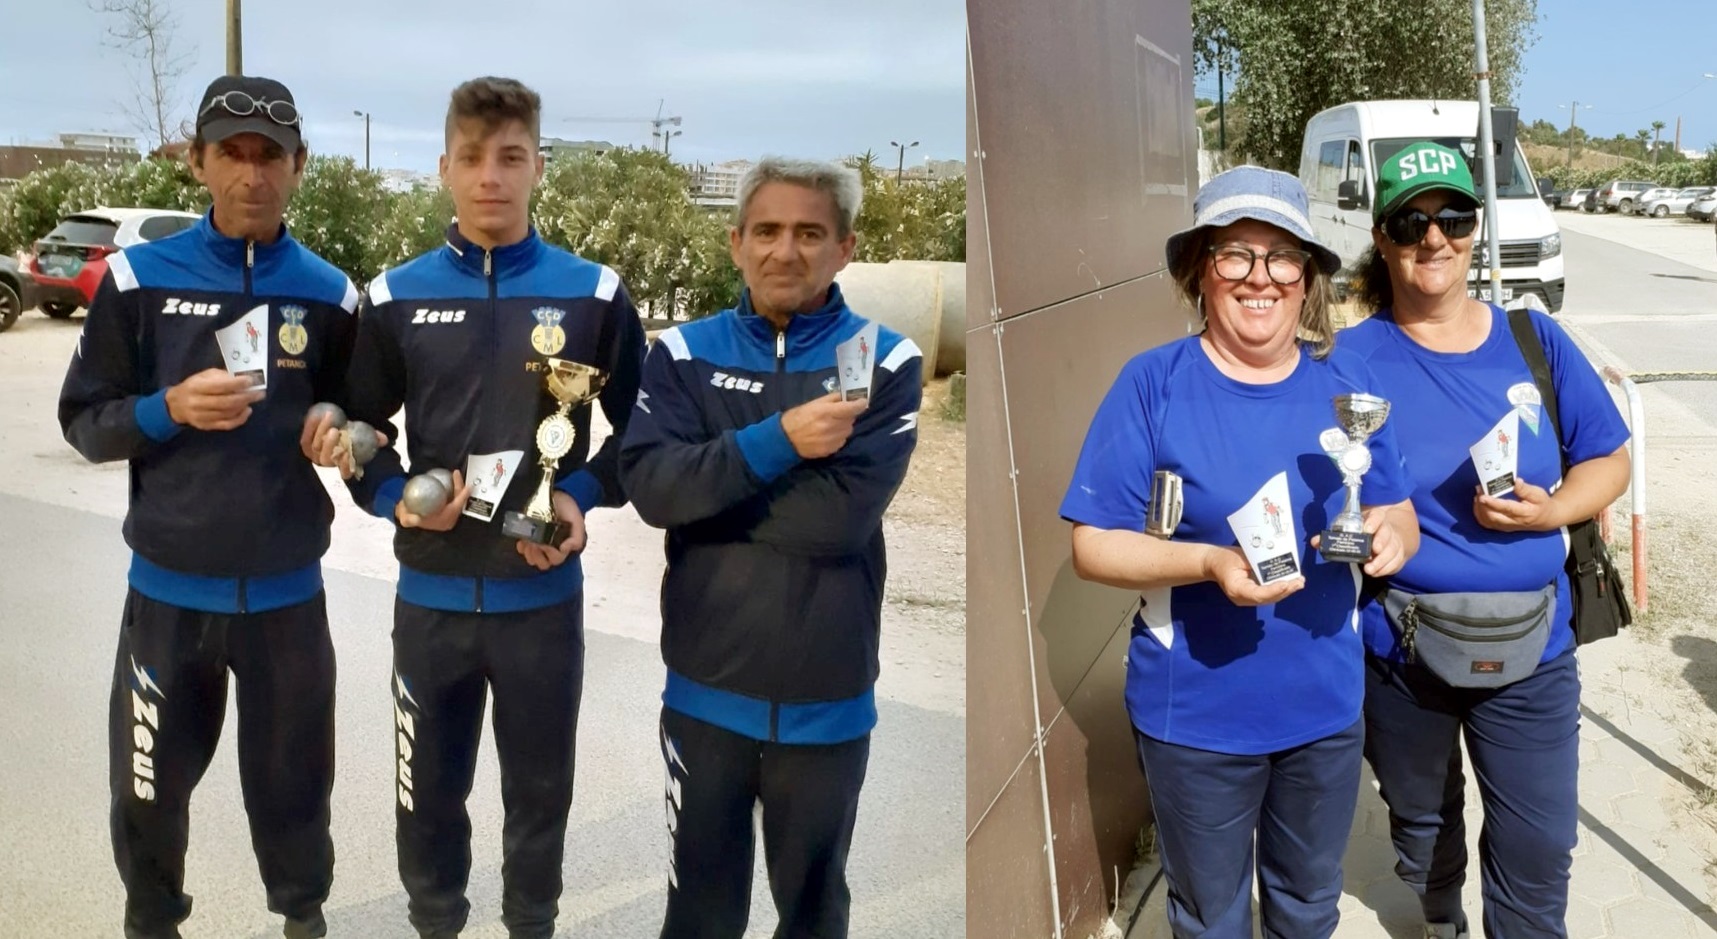 Associação de Petanca do Barlavento Algarvio e Sudoeste Alentejano (APBASA): Torneio do Grupo de Amigos do Chinicato